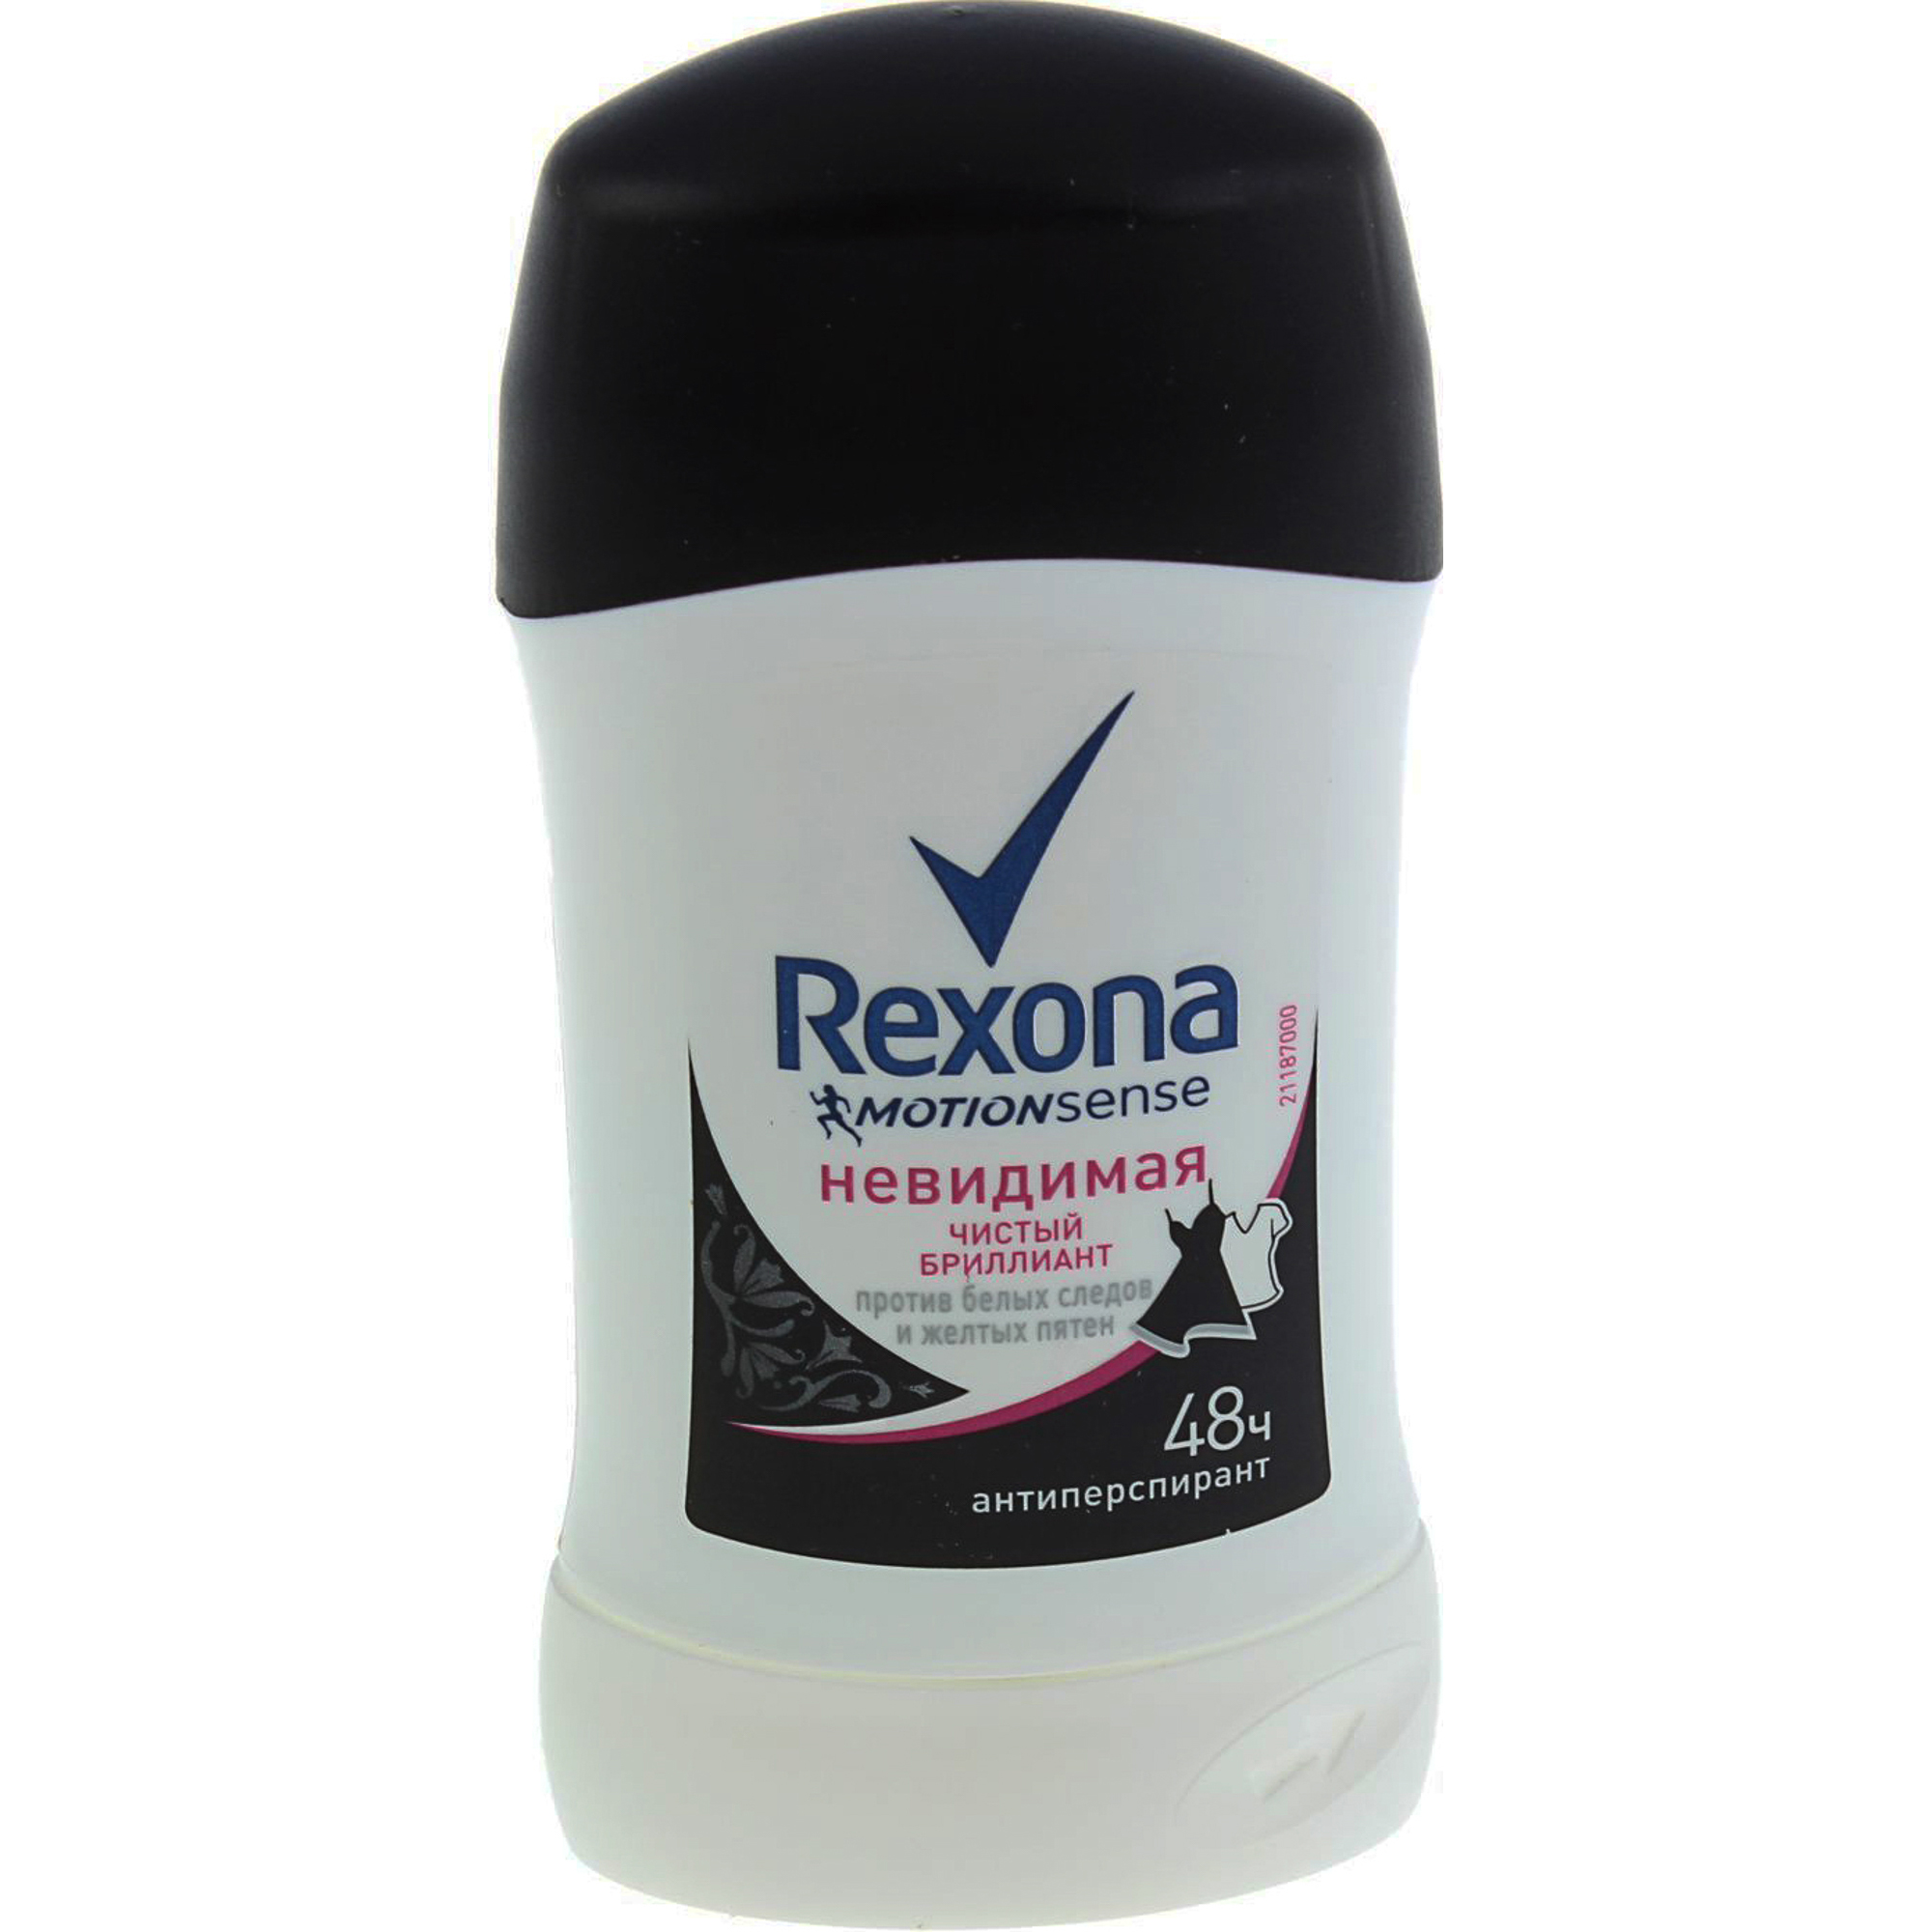 Дезодорант-антиперспирант Rexona Чистый бриллиант 40 мл антиперспирант rexona антибактериальная и невидимая на черной и белой одежде 40 мл